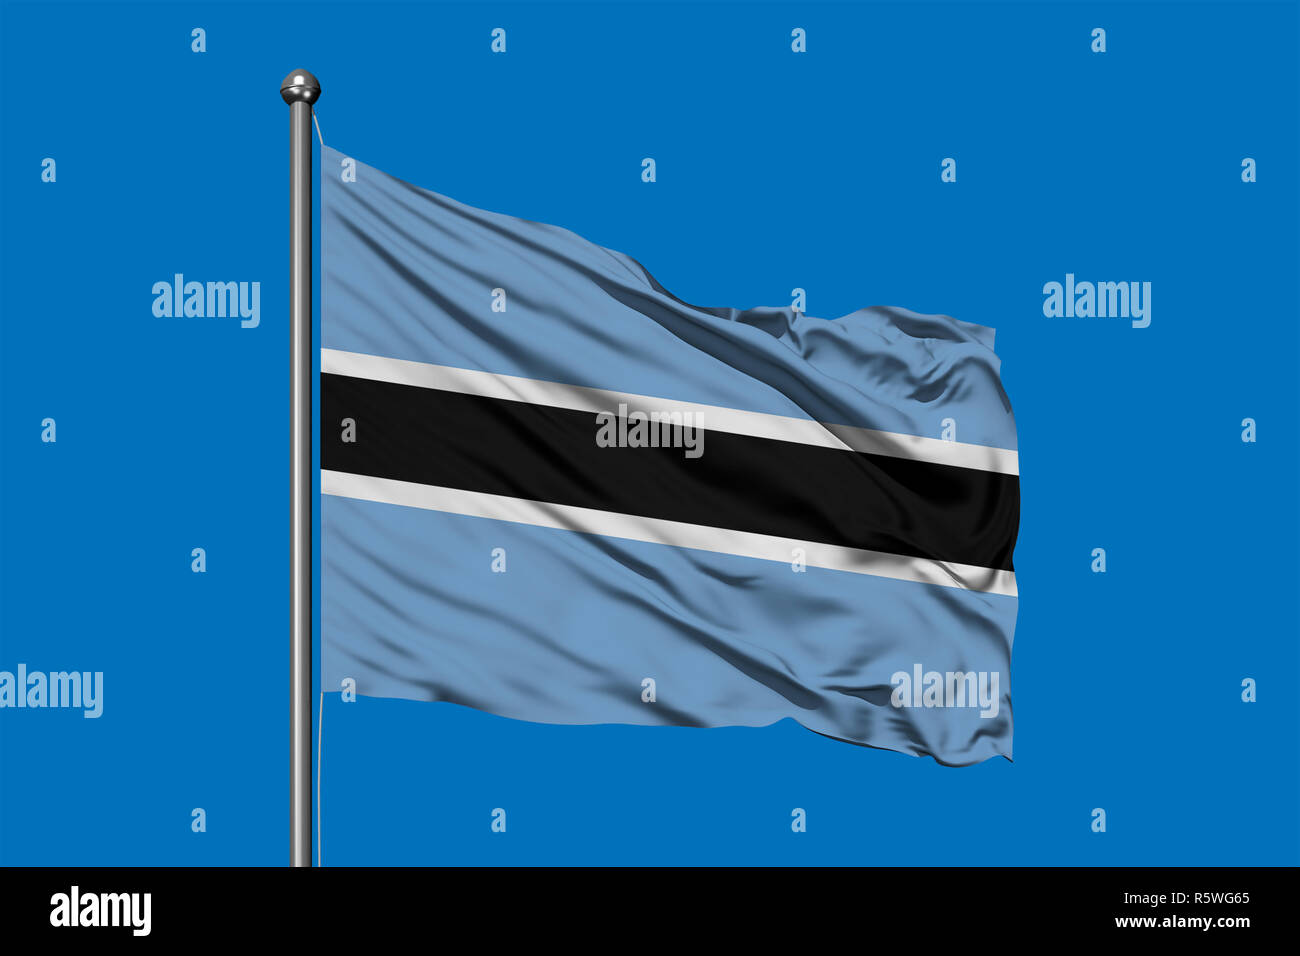 Bandera de Botswana ondeando en el viento contra el cielo azul profundo. La bandera de Botsuana. Foto de stock